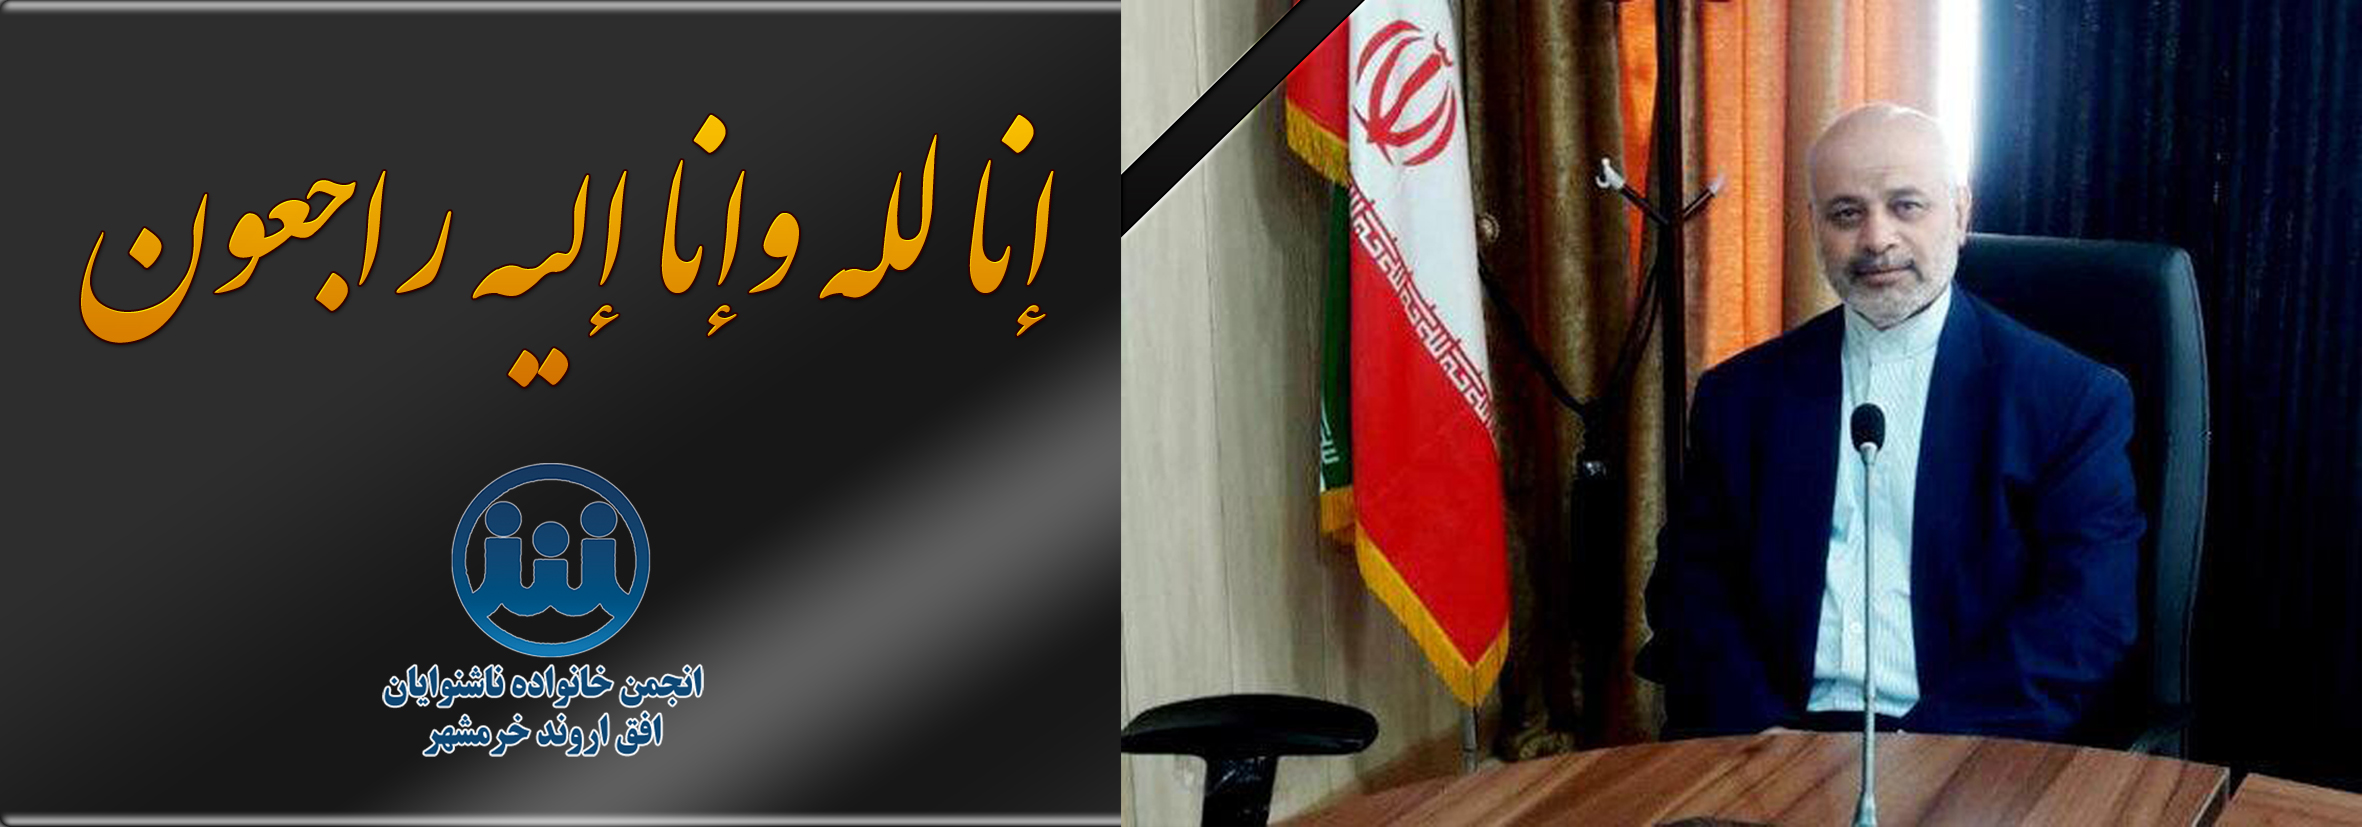 در گذشت حاج علی بندری عضو  شورای شهر خرمشهر